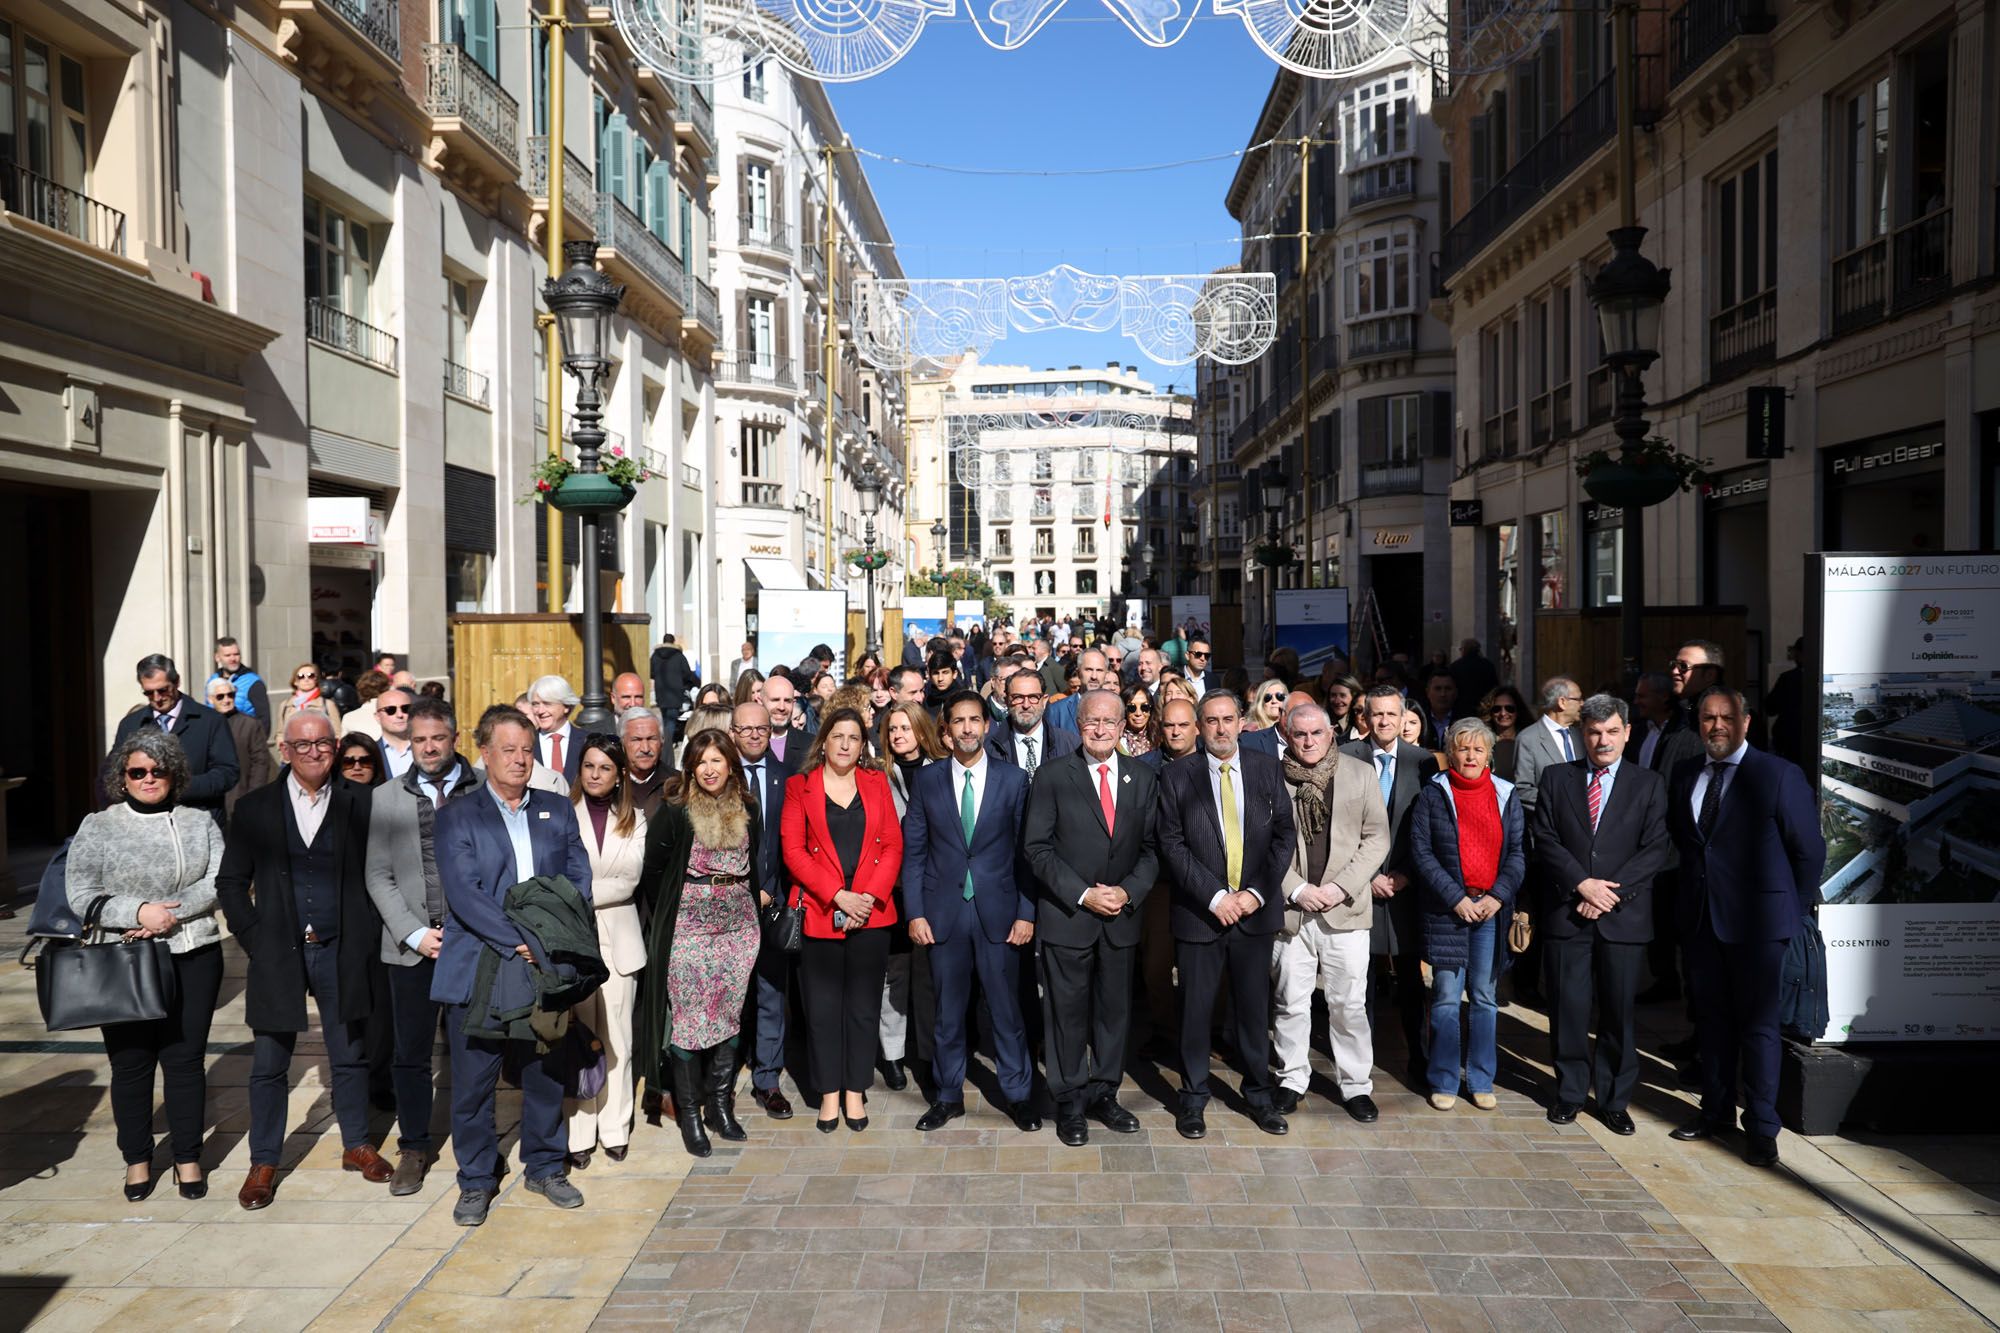 Inaugurada la Exposición ‘Málaga 2027. Un futuro presente’ de La Opinión de Málaga